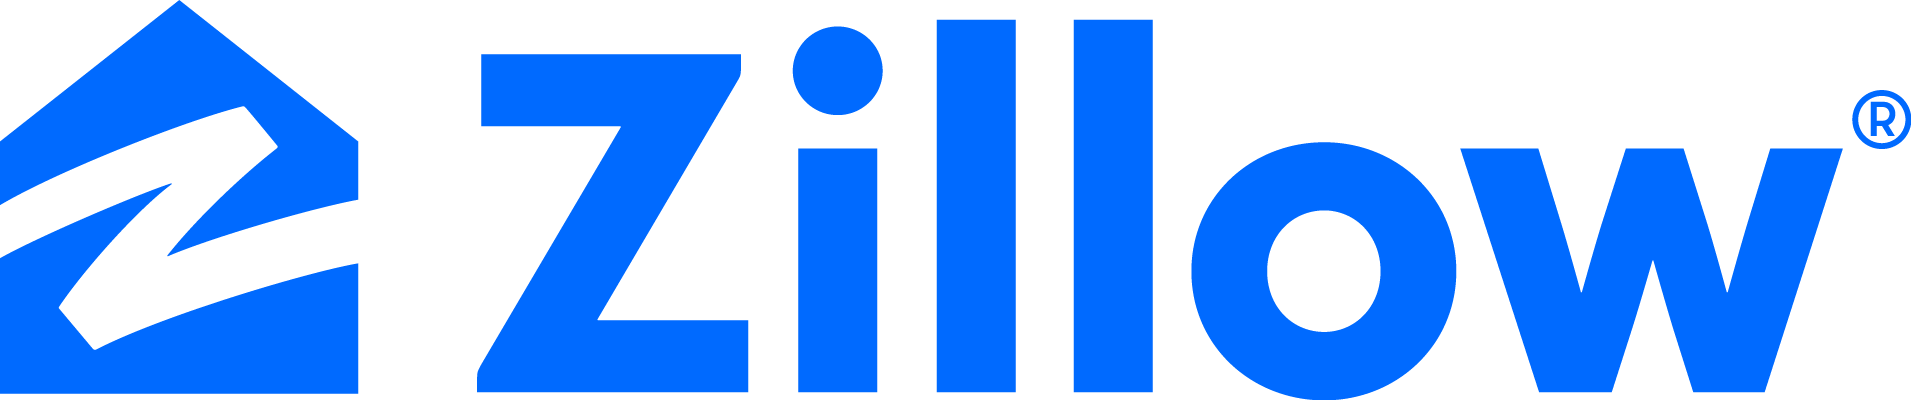 Zillow MediaRoom - Logos